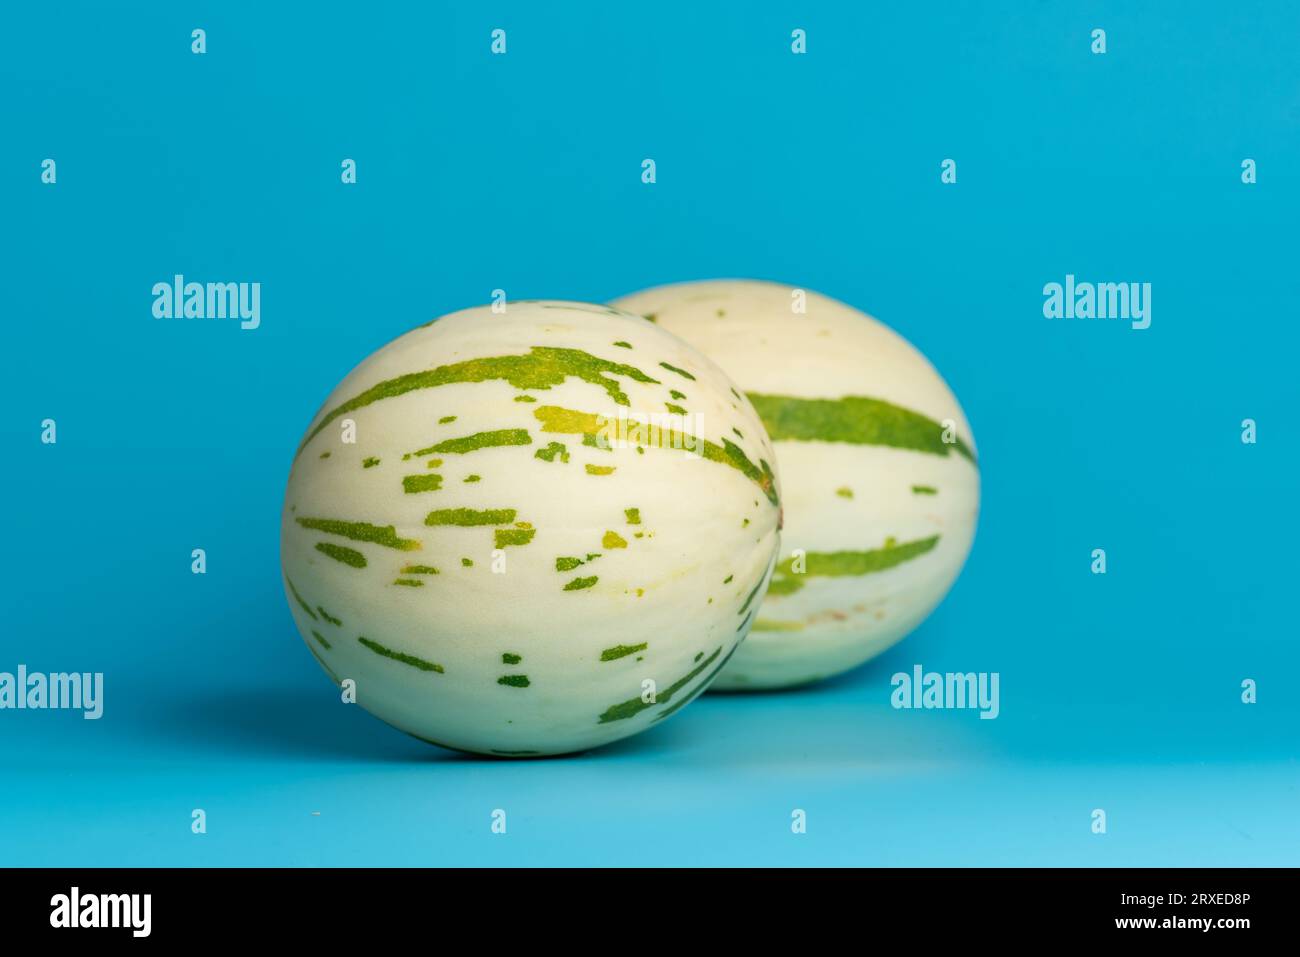 Melone gaya avorio con strisce verdi punteggiate e macchie su sfondo blu. Frutta colorata matura succosa e morbida, sapore dolce con note floreali Foto Stock